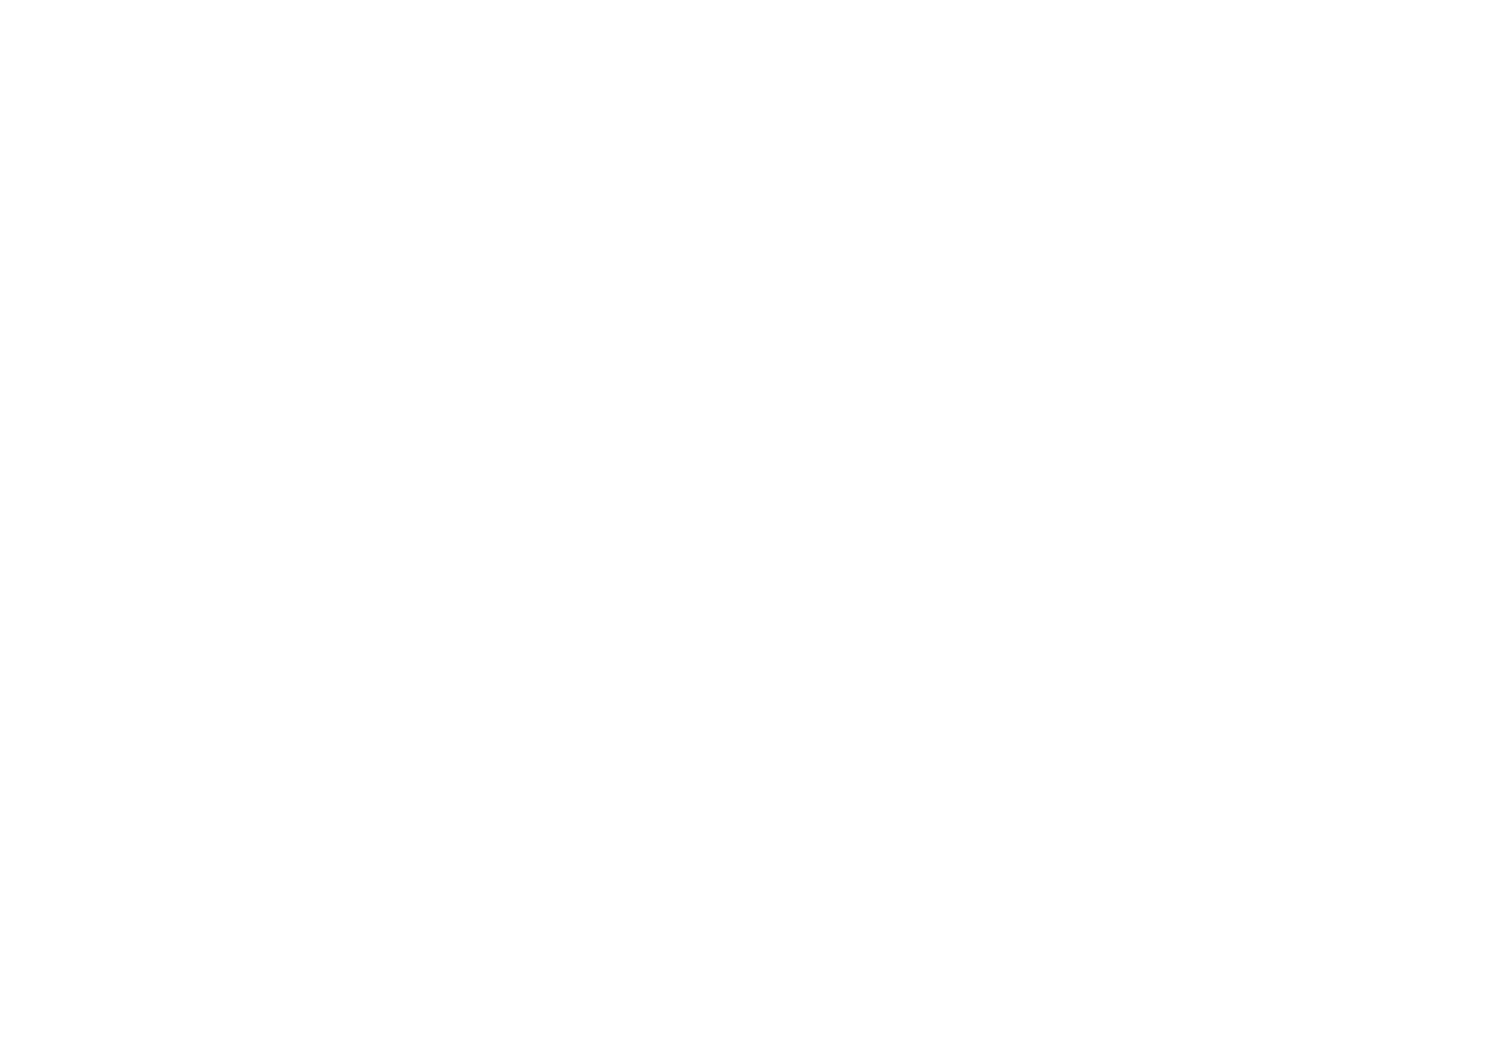 OLE holding